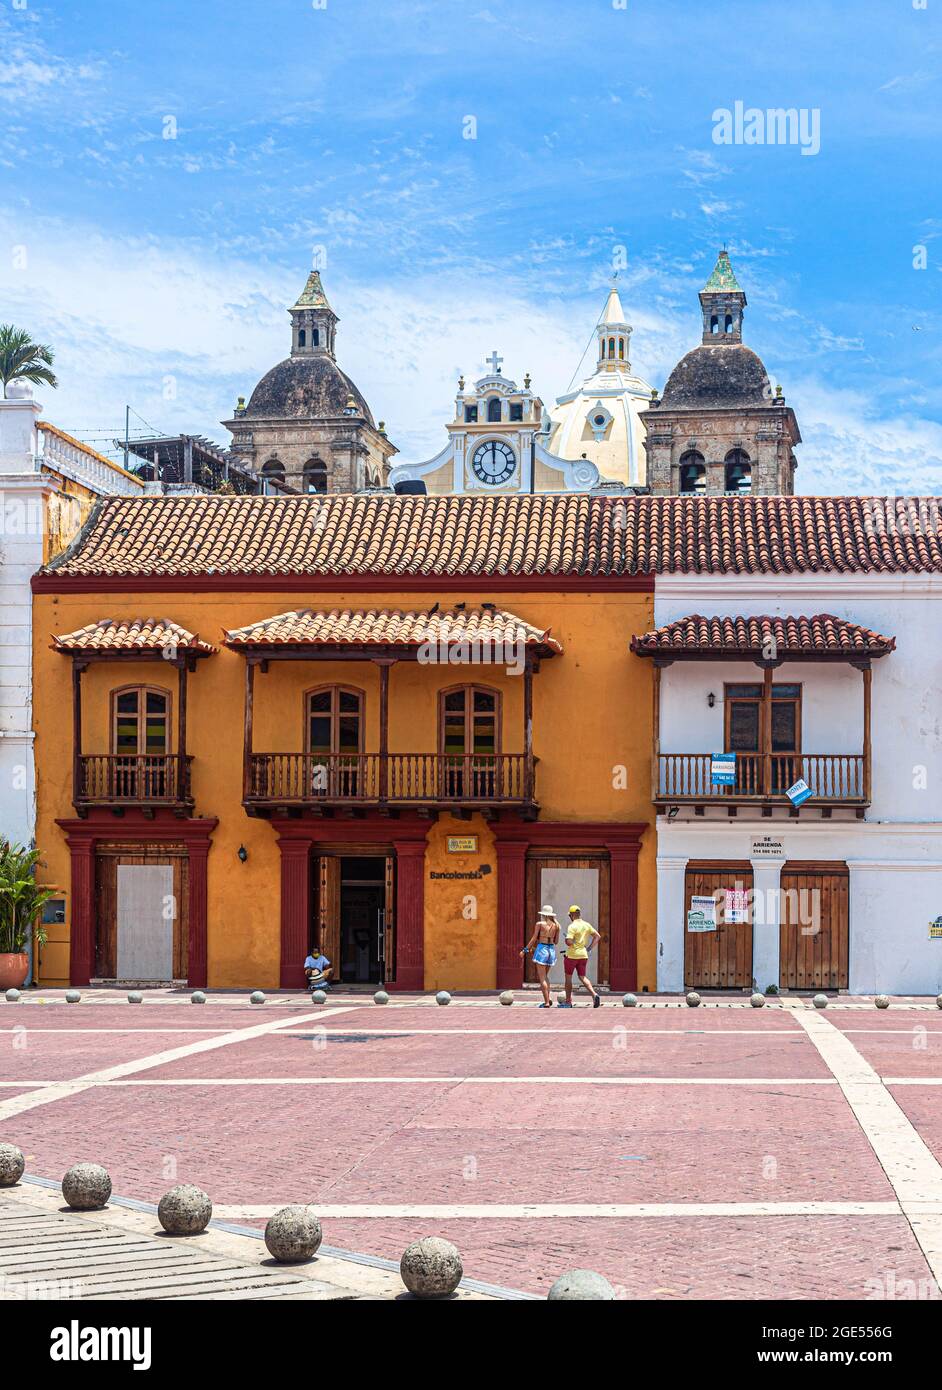 Spanish colonial buildings around Plaza de la Aduana, Cartagena de Indias, Colombia. Stock Photo